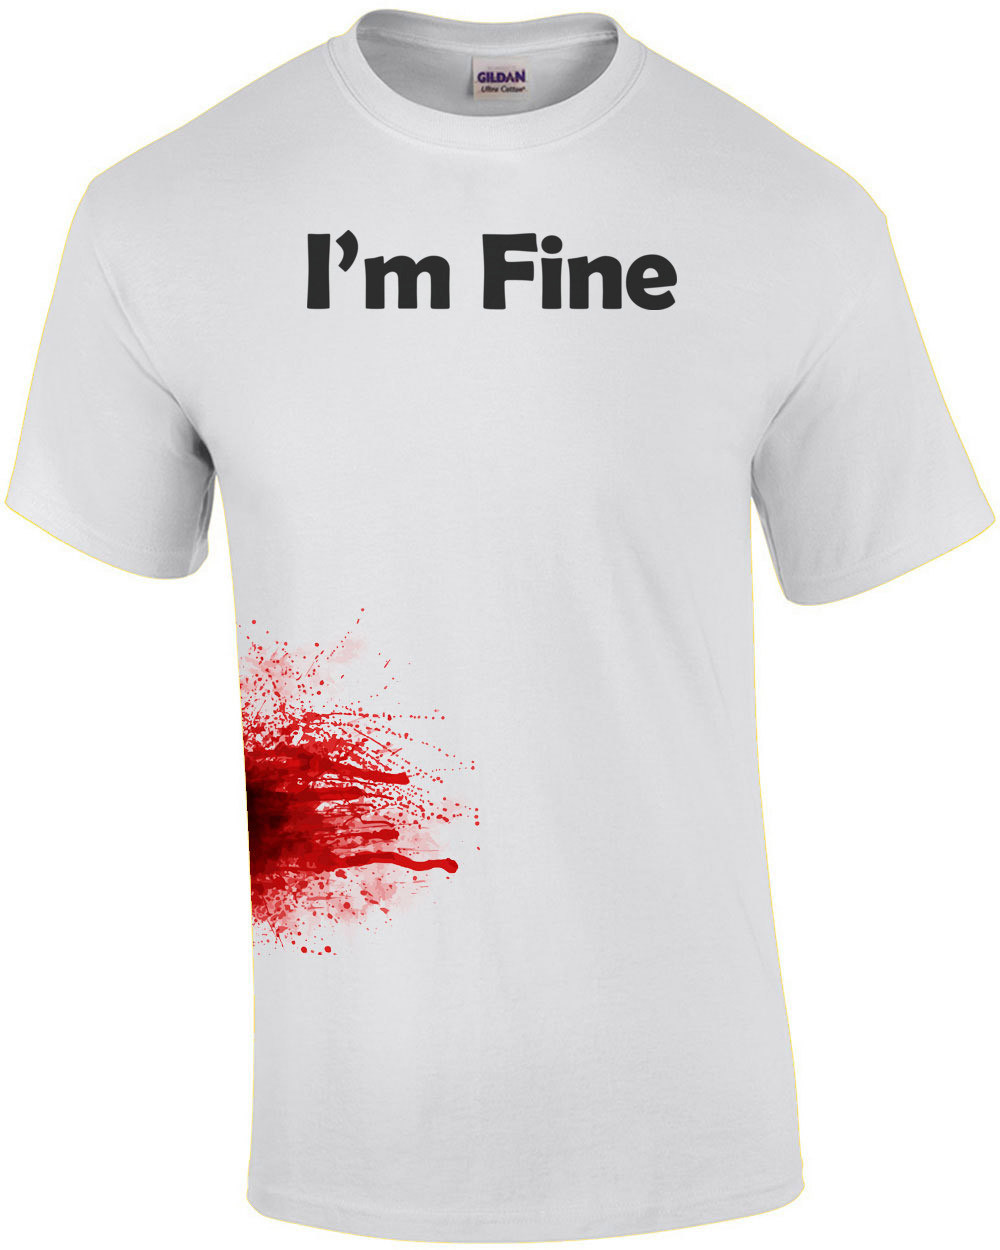 I'm Fine - Zombie